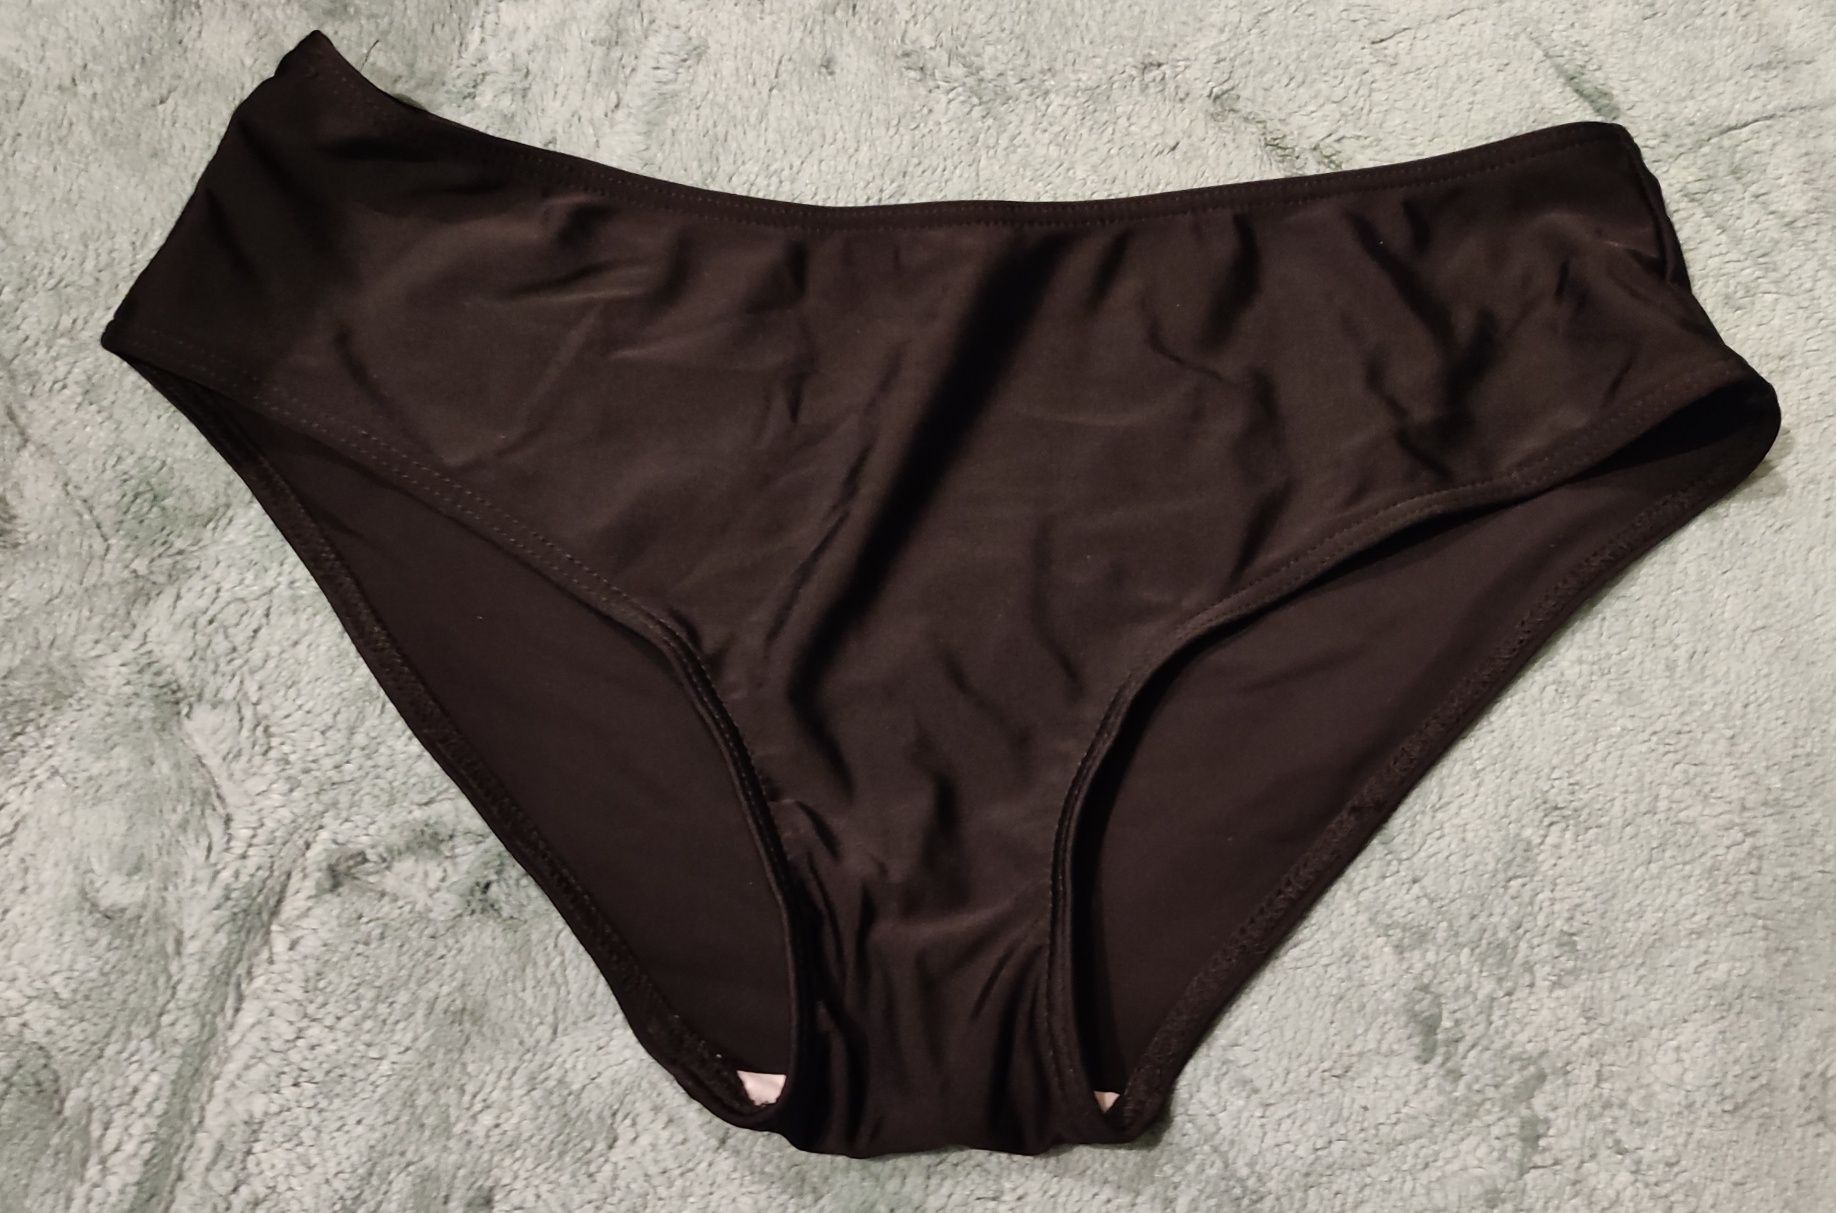 Majtki od stroju kąpielowego czarne elastan bikini doł 40